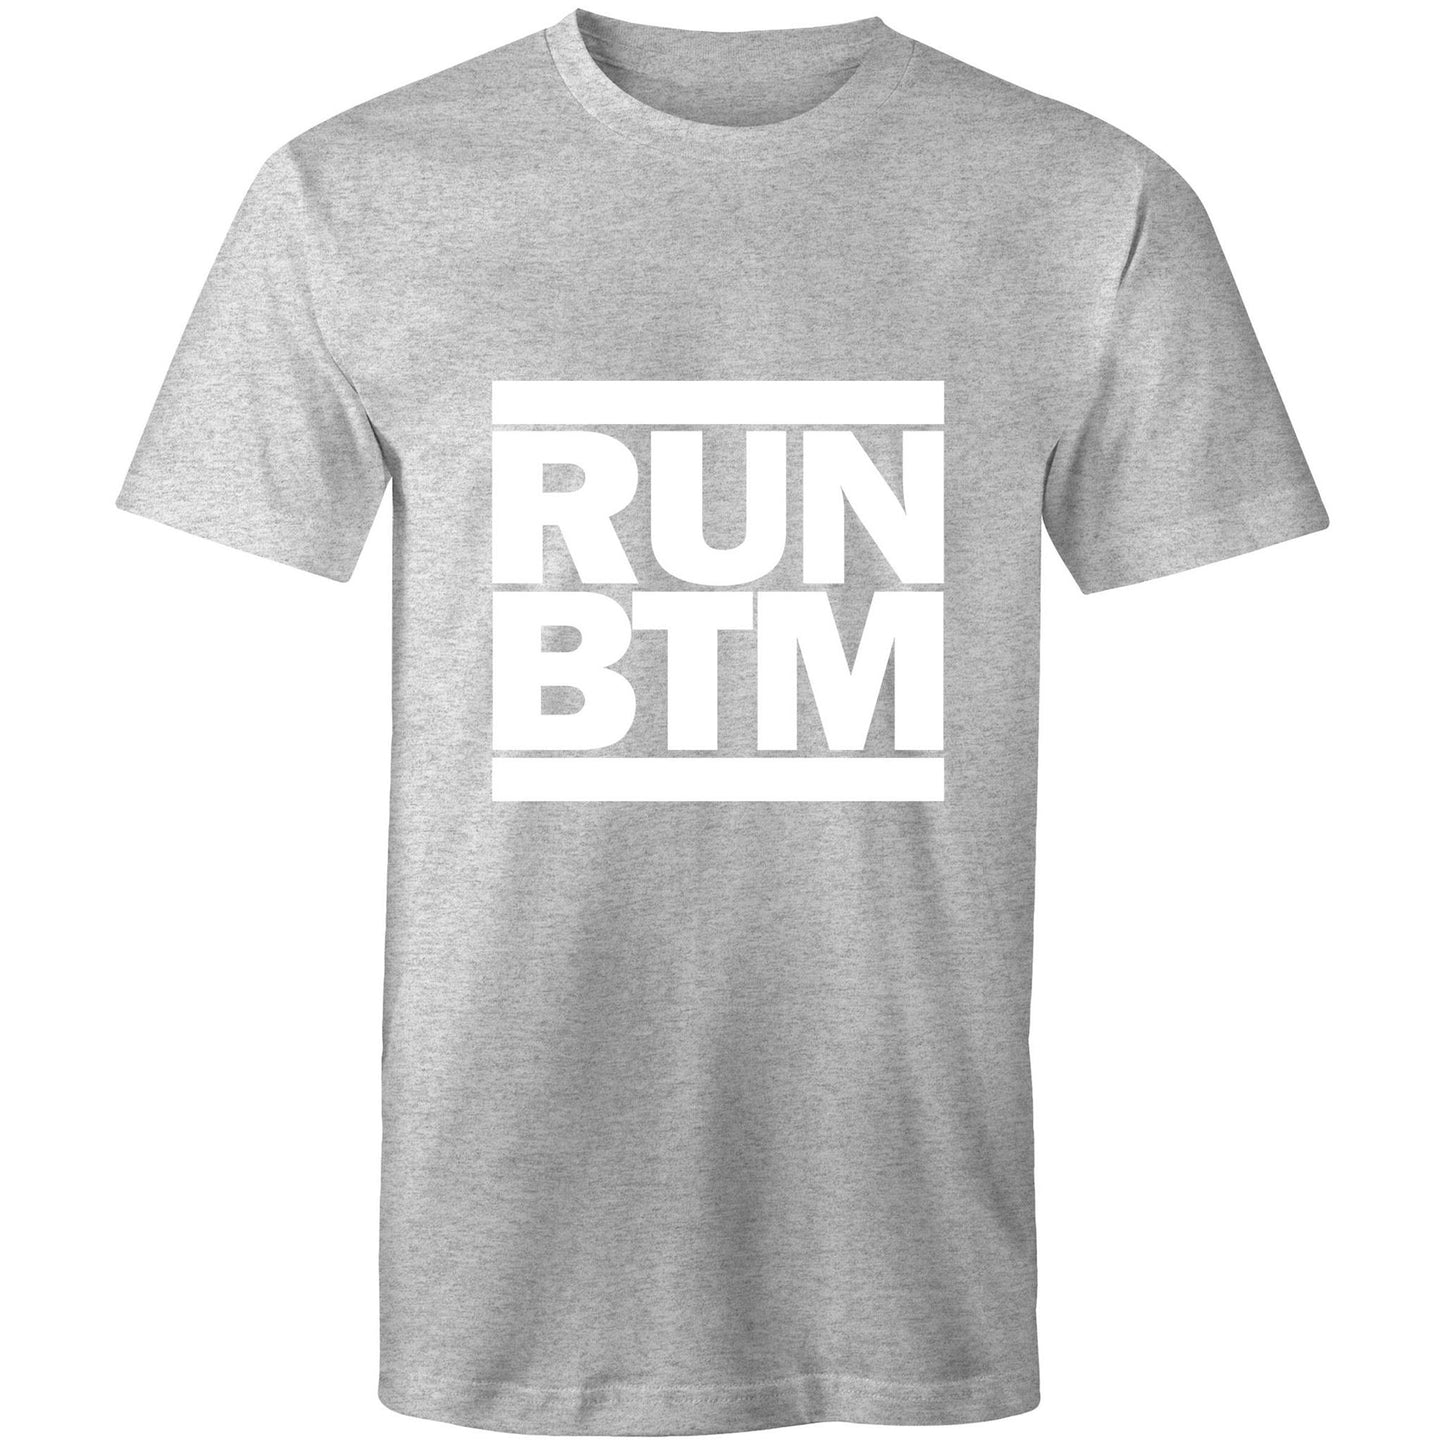 RUN BTM (All white) - AS Colour Staple - Mens T-Shirt